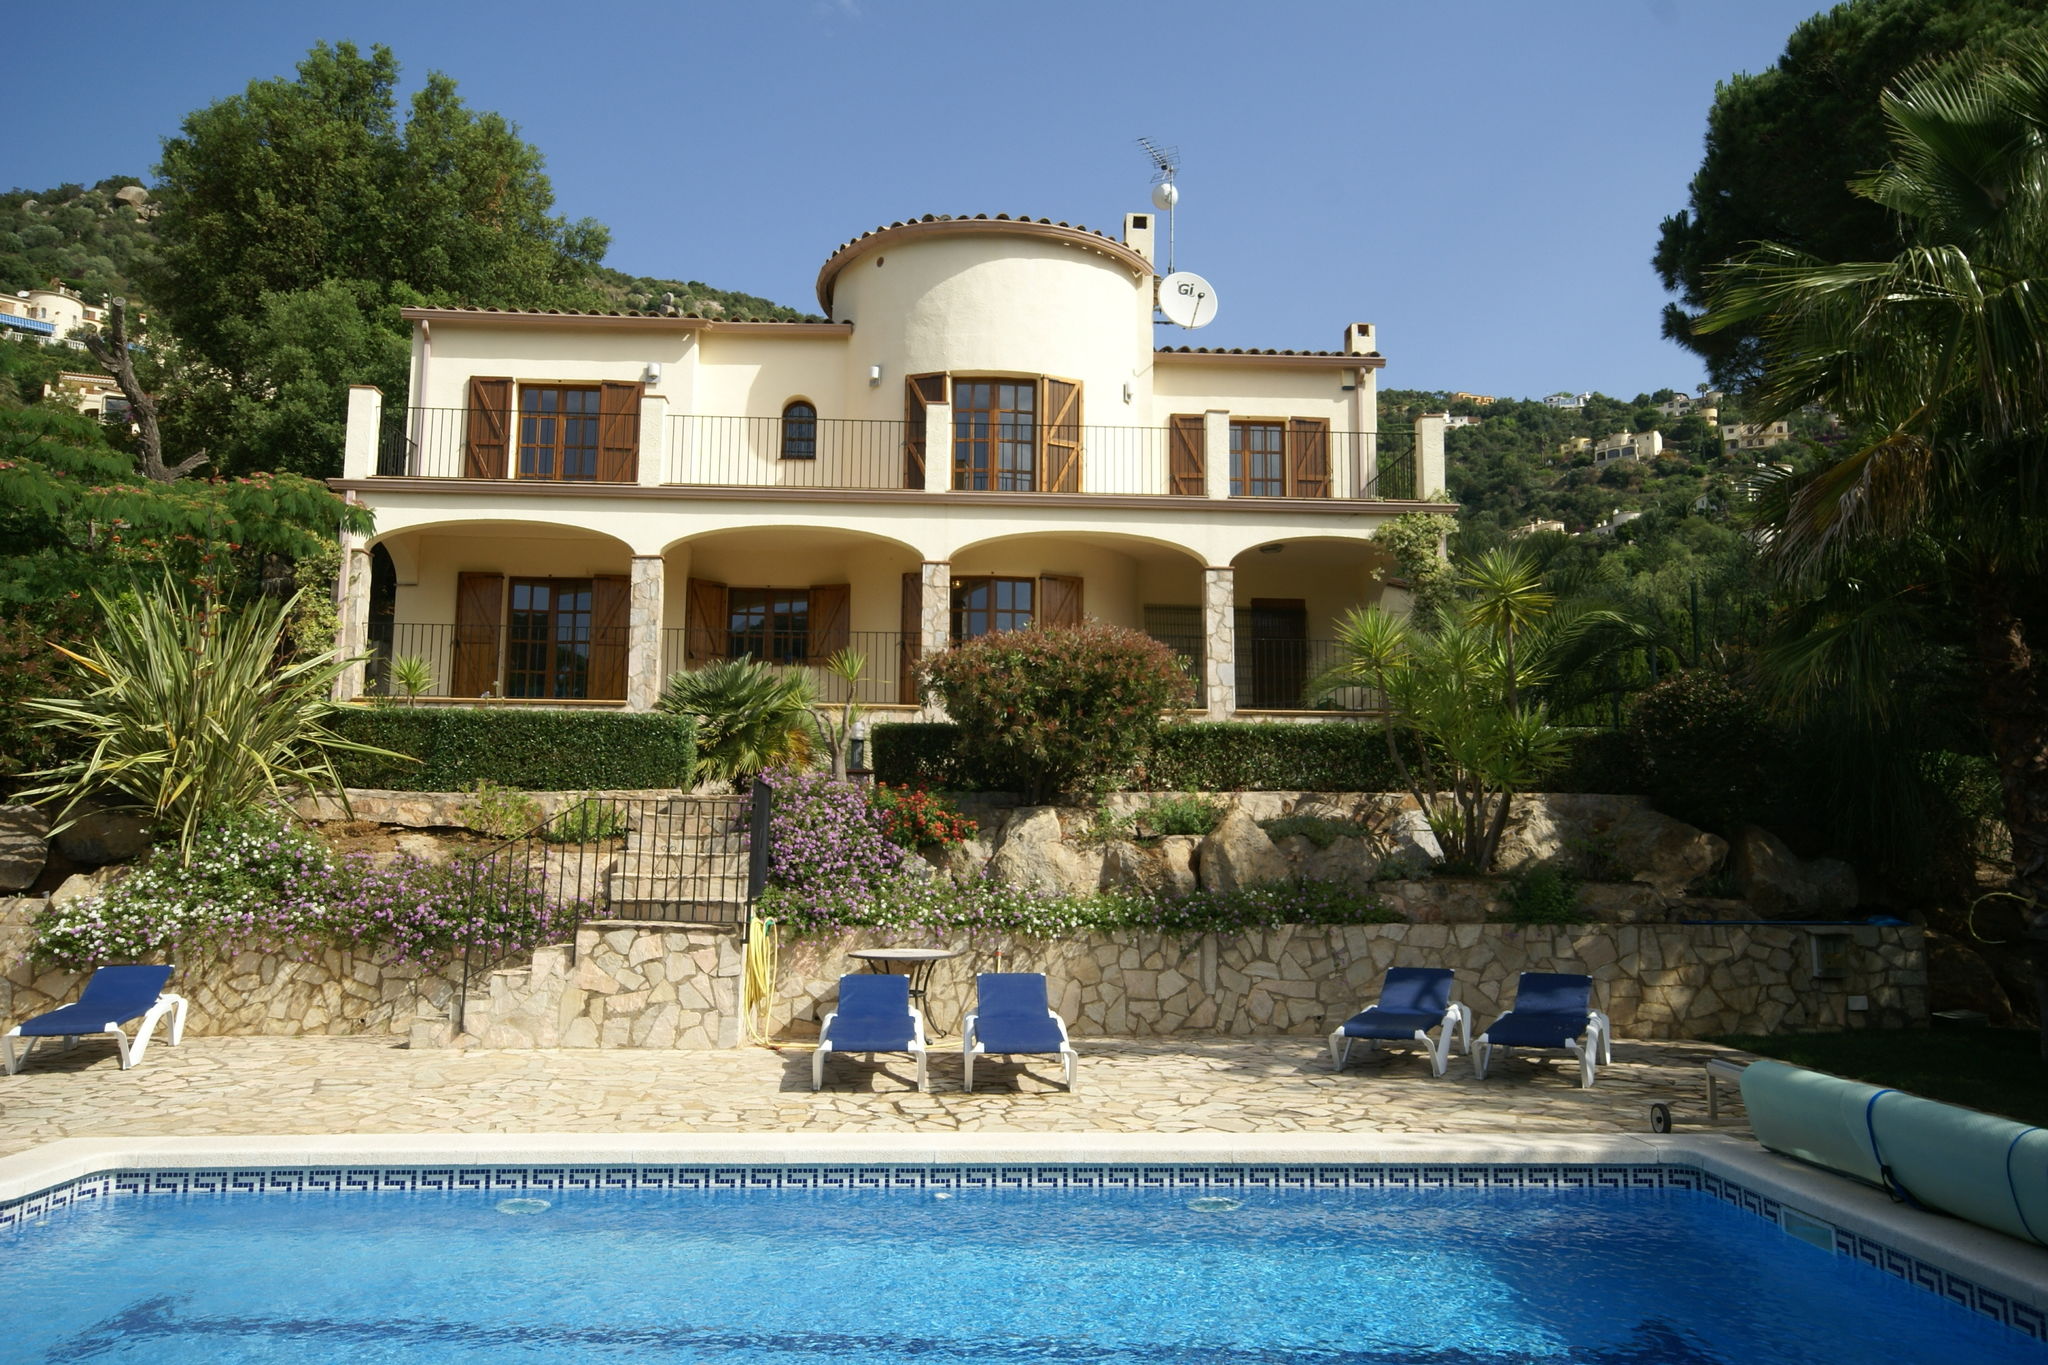 Mooie villa nabij Calonge met privé-zwembad, privacy, rust en prachtig uitzicht